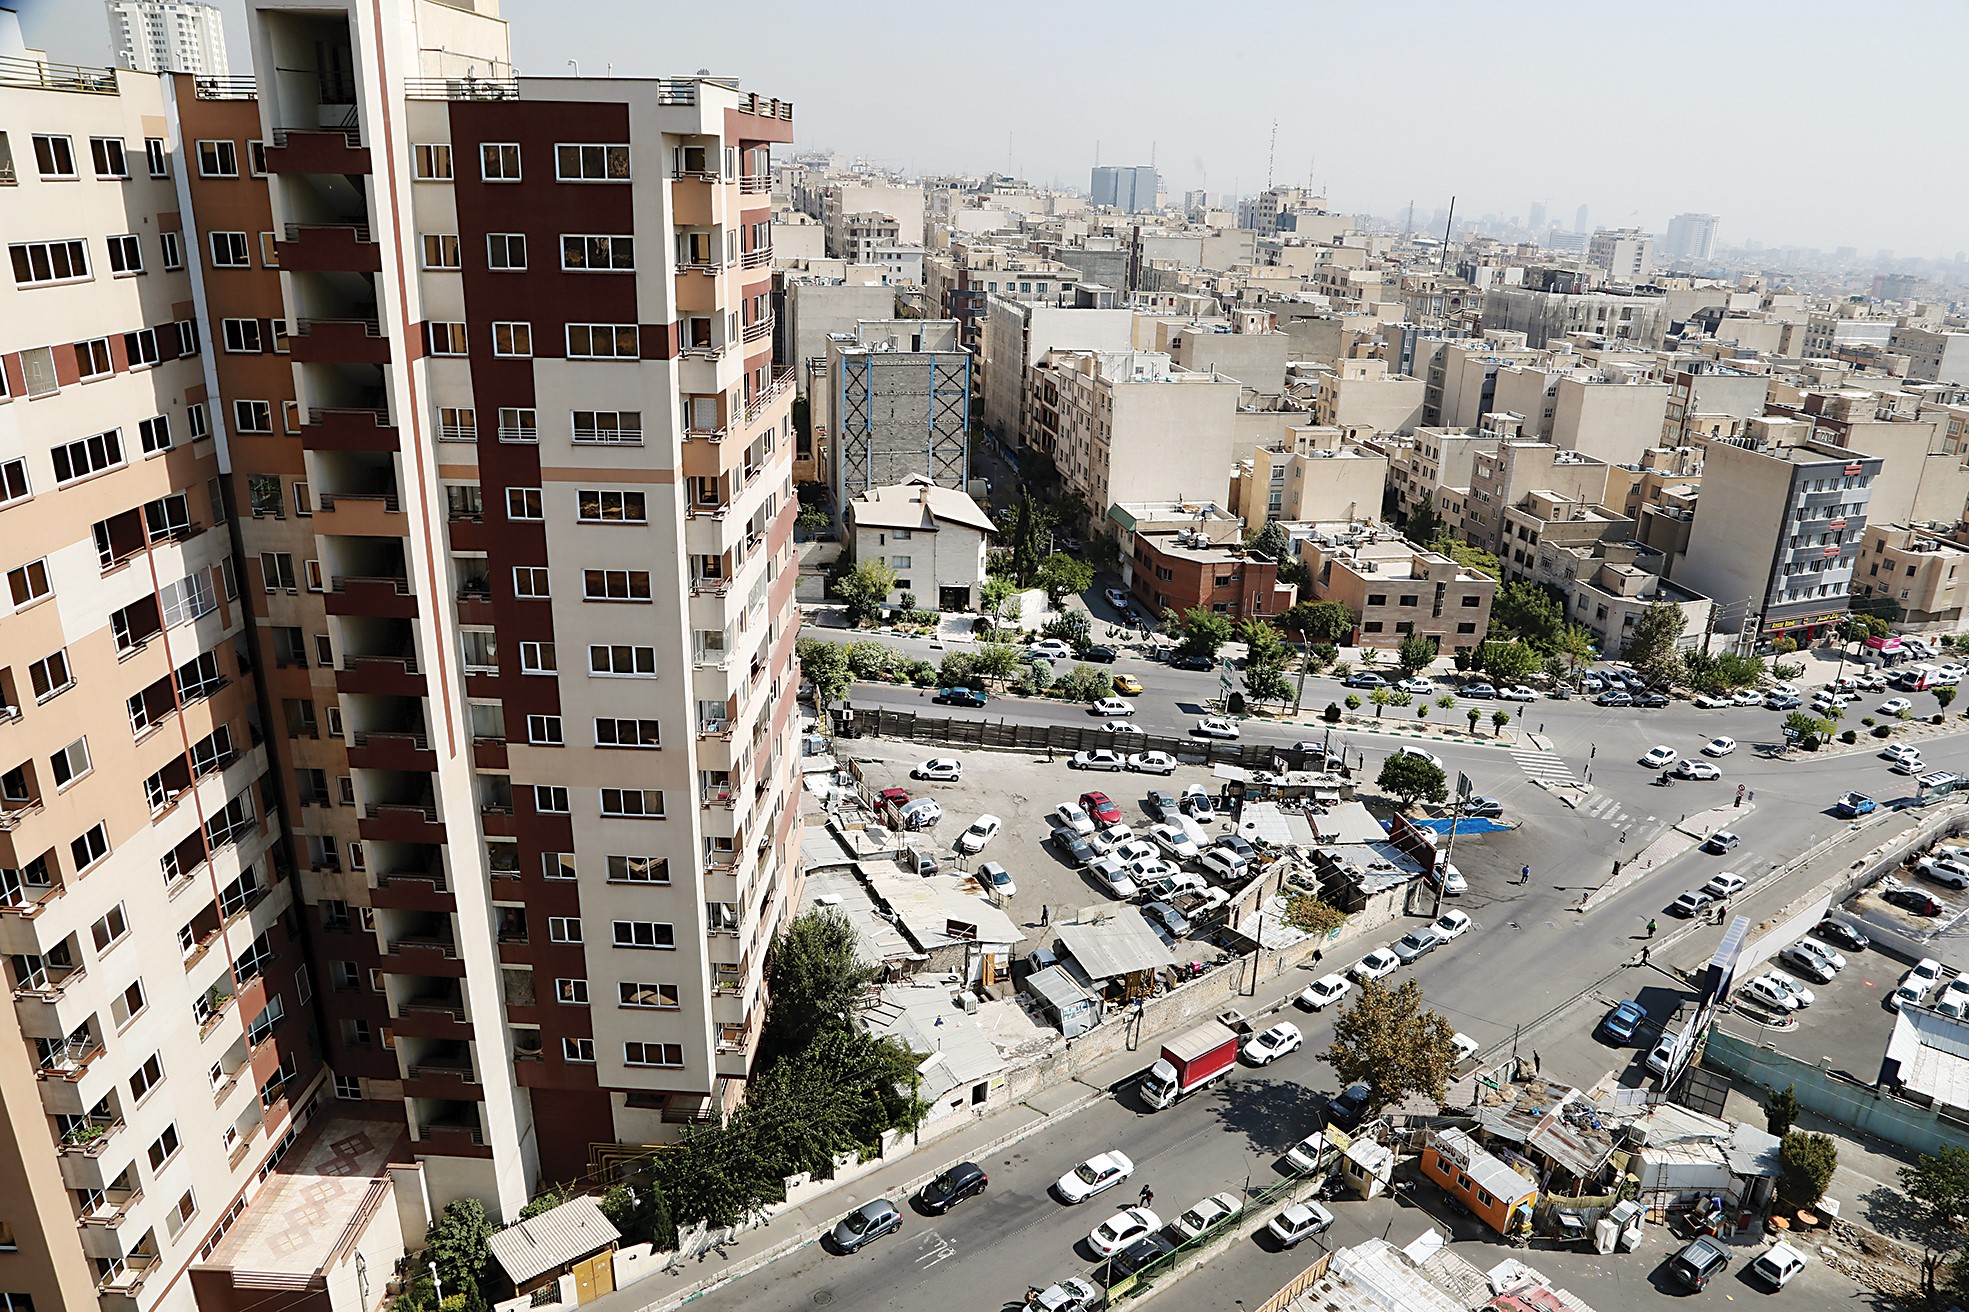 متراژ پروانه‌های ساختمانی جدید تهران و کل نقاط شهری کم شد، اما تعداد واحدها بیشتر / افزایش اقبال سازندگان به ساخت واحدهای کوچکتر